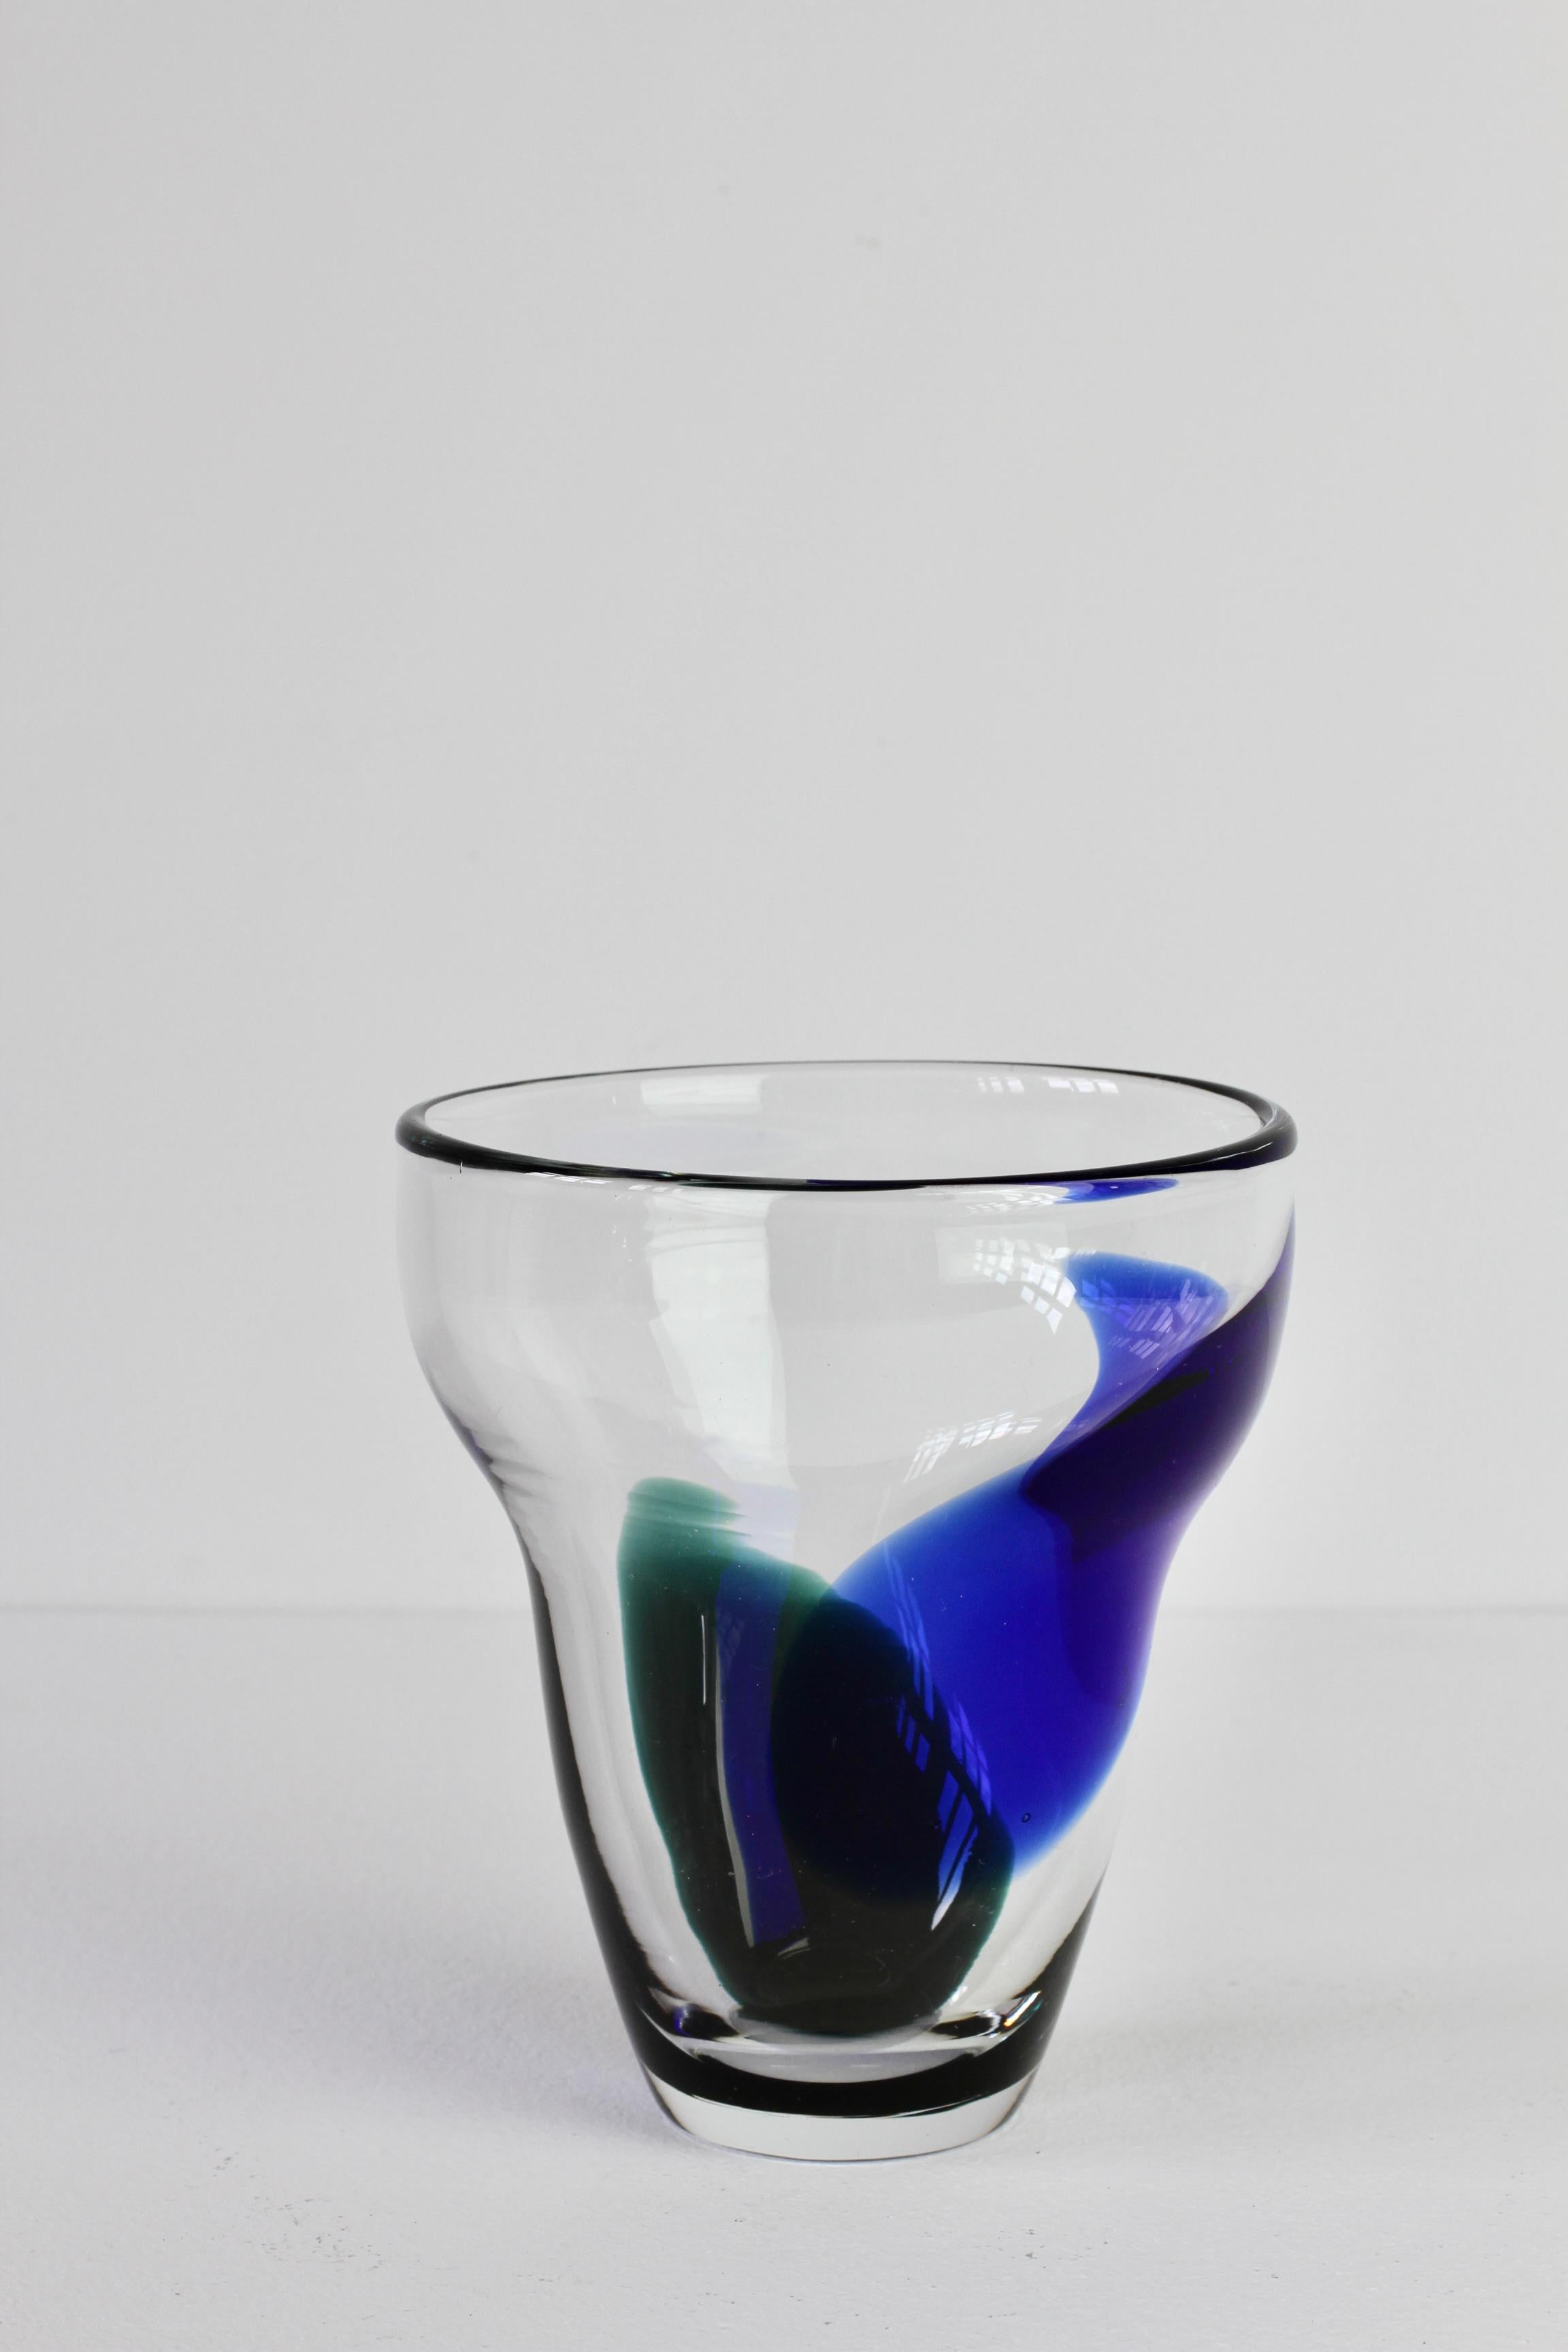 Blue & Green Patch Vase Signed by Wiktor Berndt for Flygsfors Glass Sweden, 1958 For Sale 3